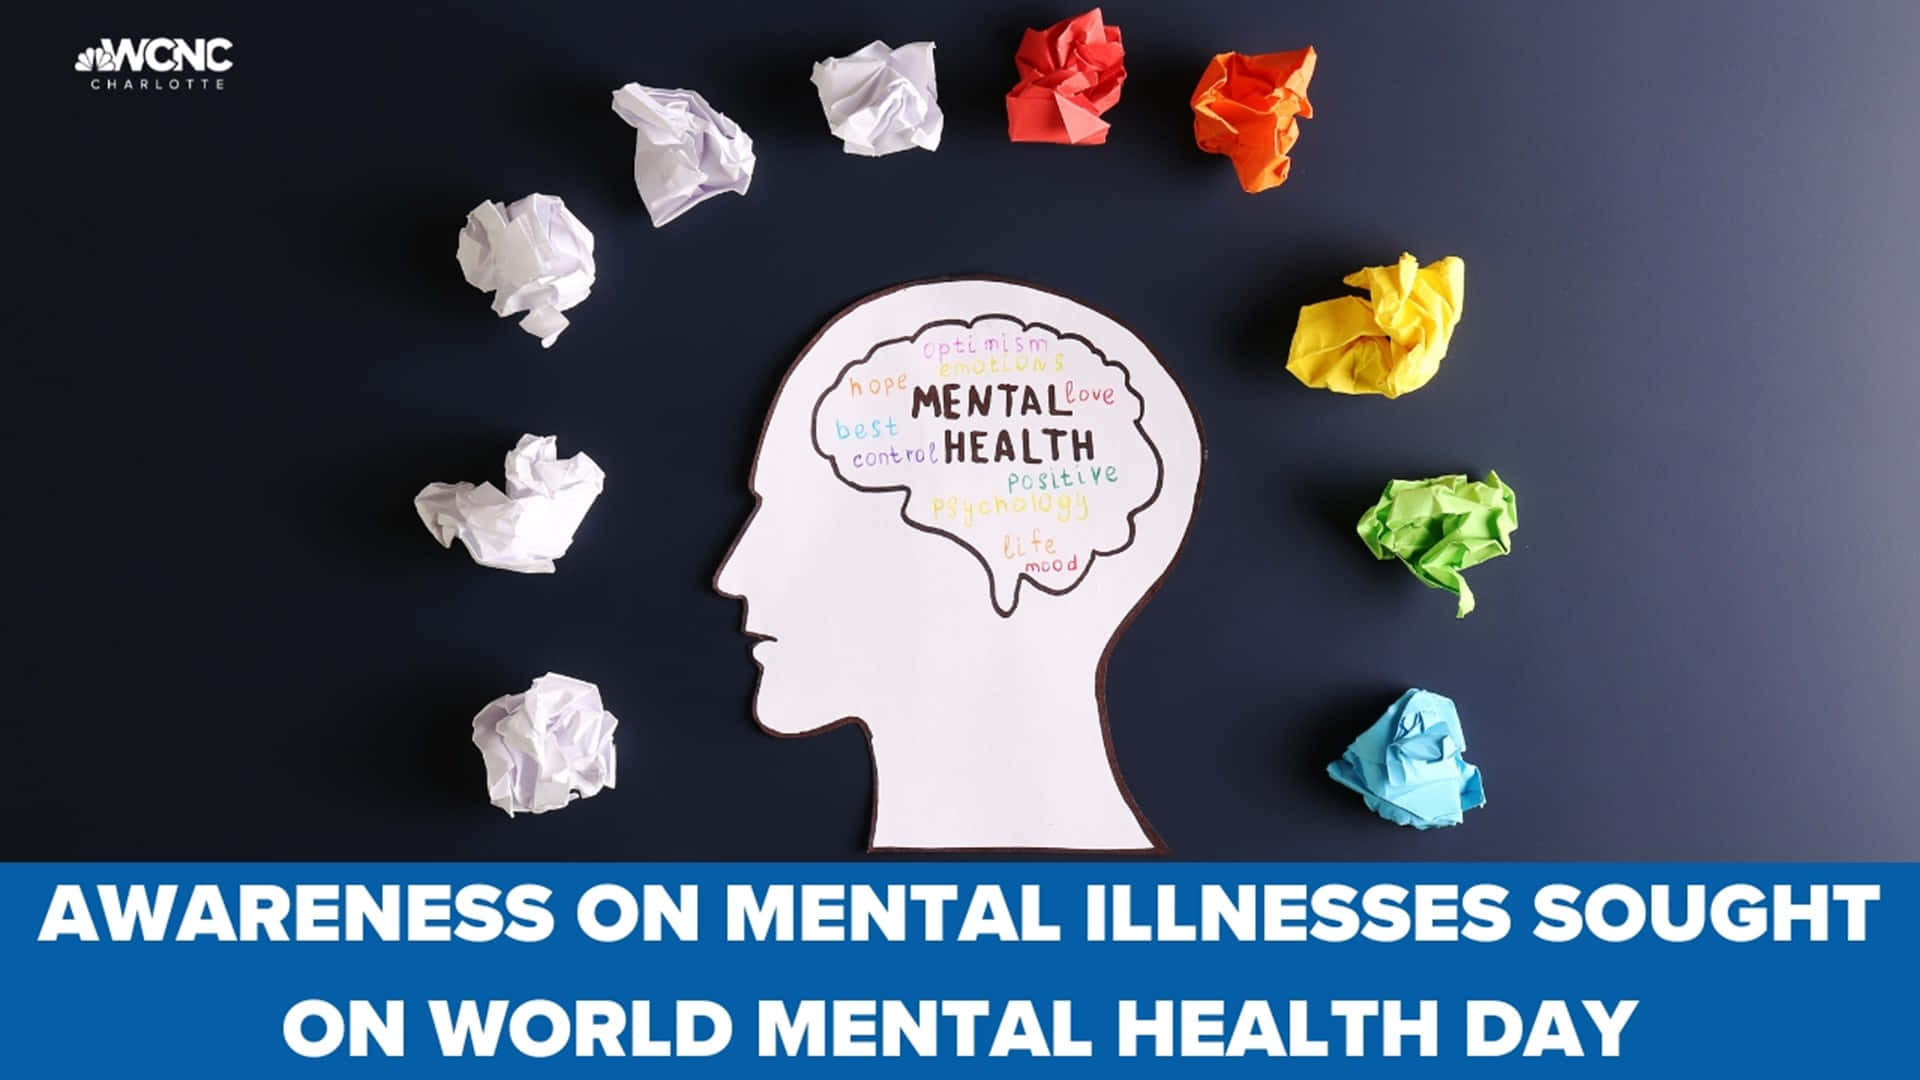 Concienciasobre Las Enfermedades Mentales Buscada En El Día Mundial De La Salud Mental